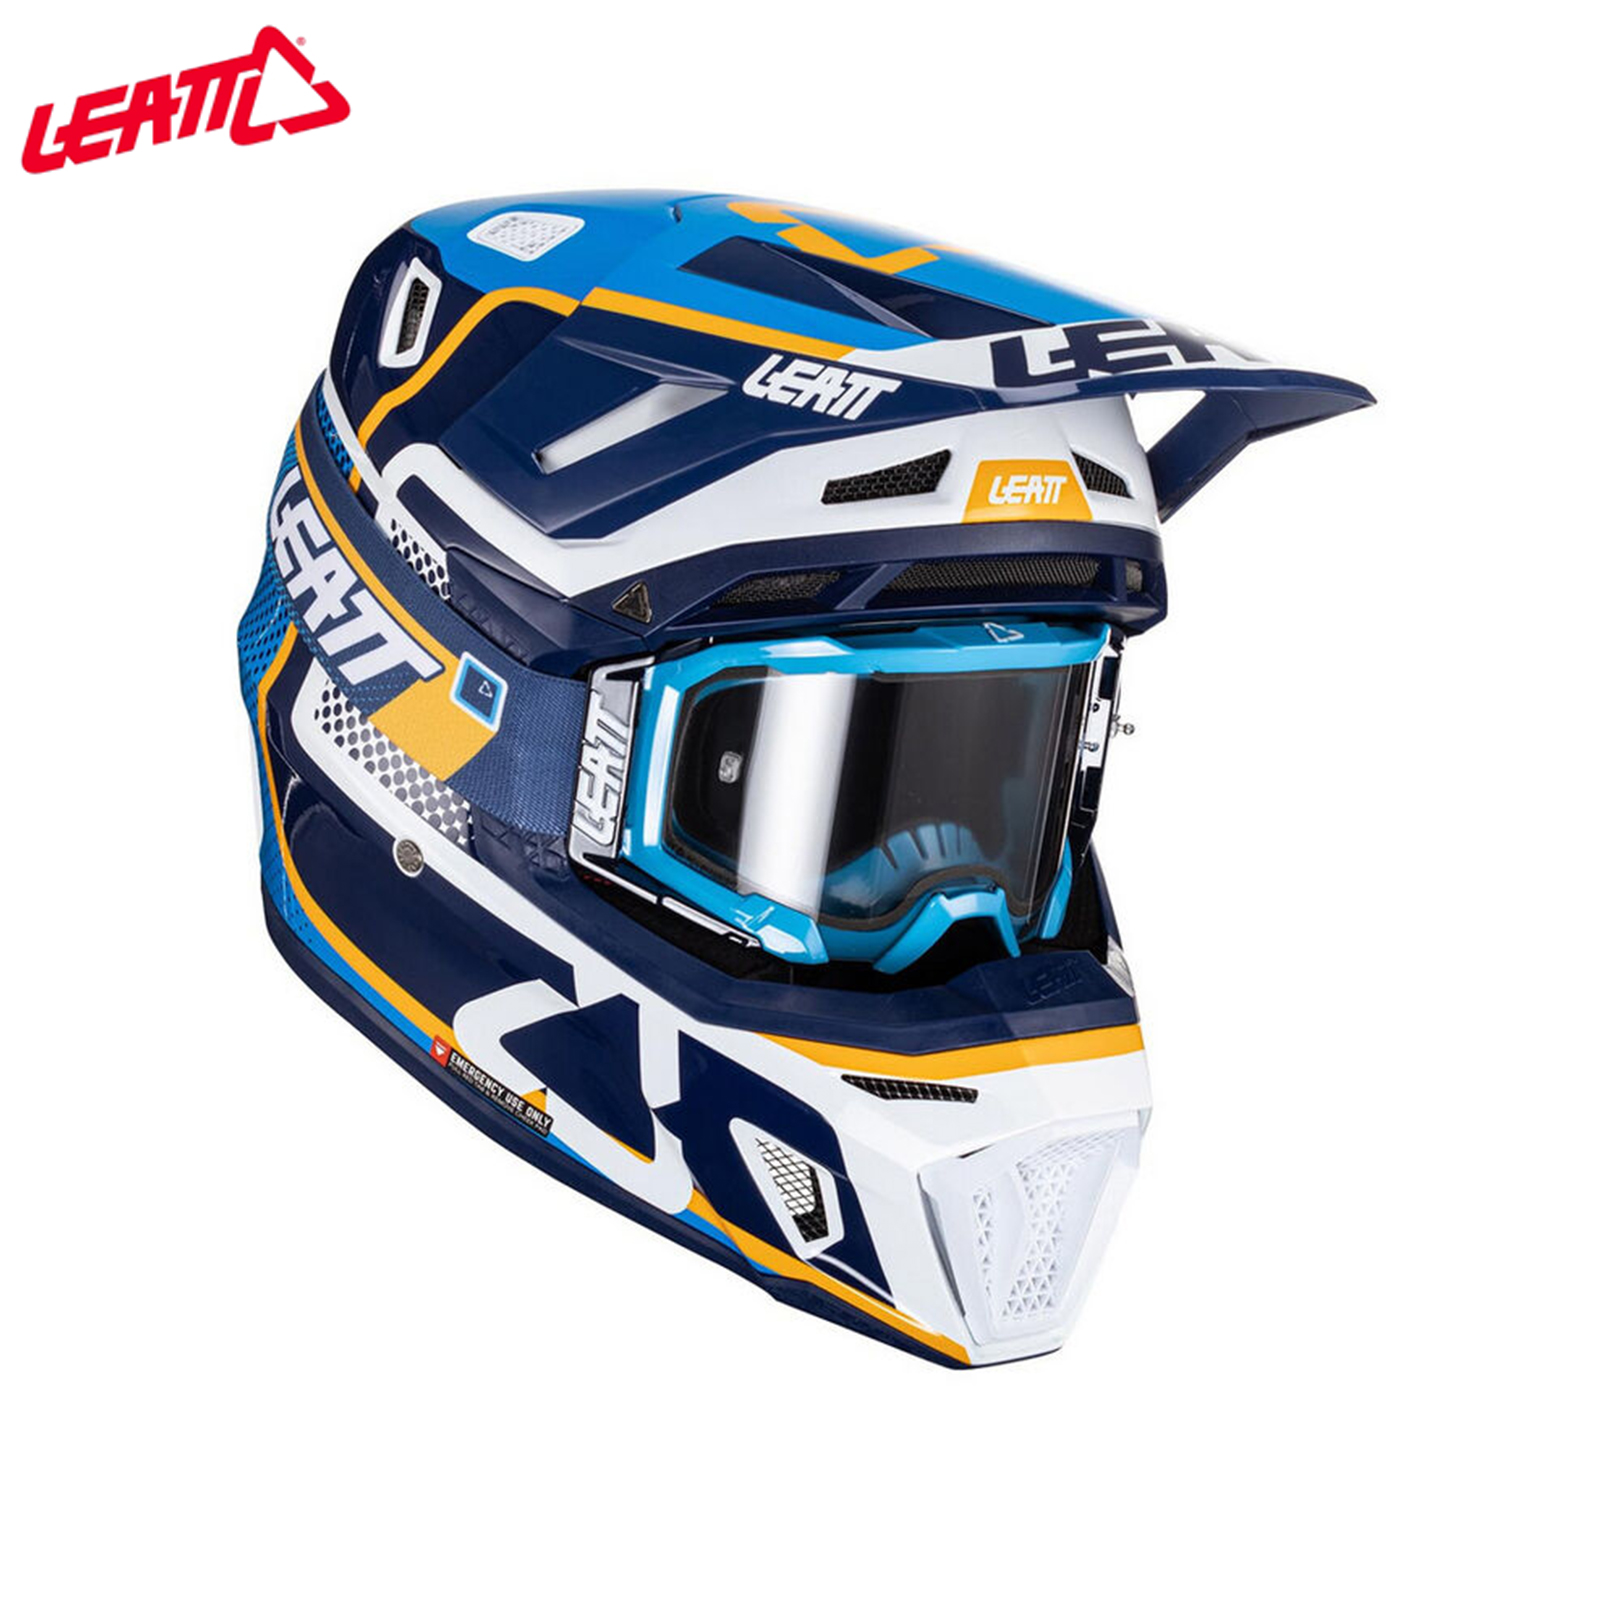 LEATT头盔8.5 9.5越野摩托车场地竞技拉力攀爬速降骑行通风超轻-图1